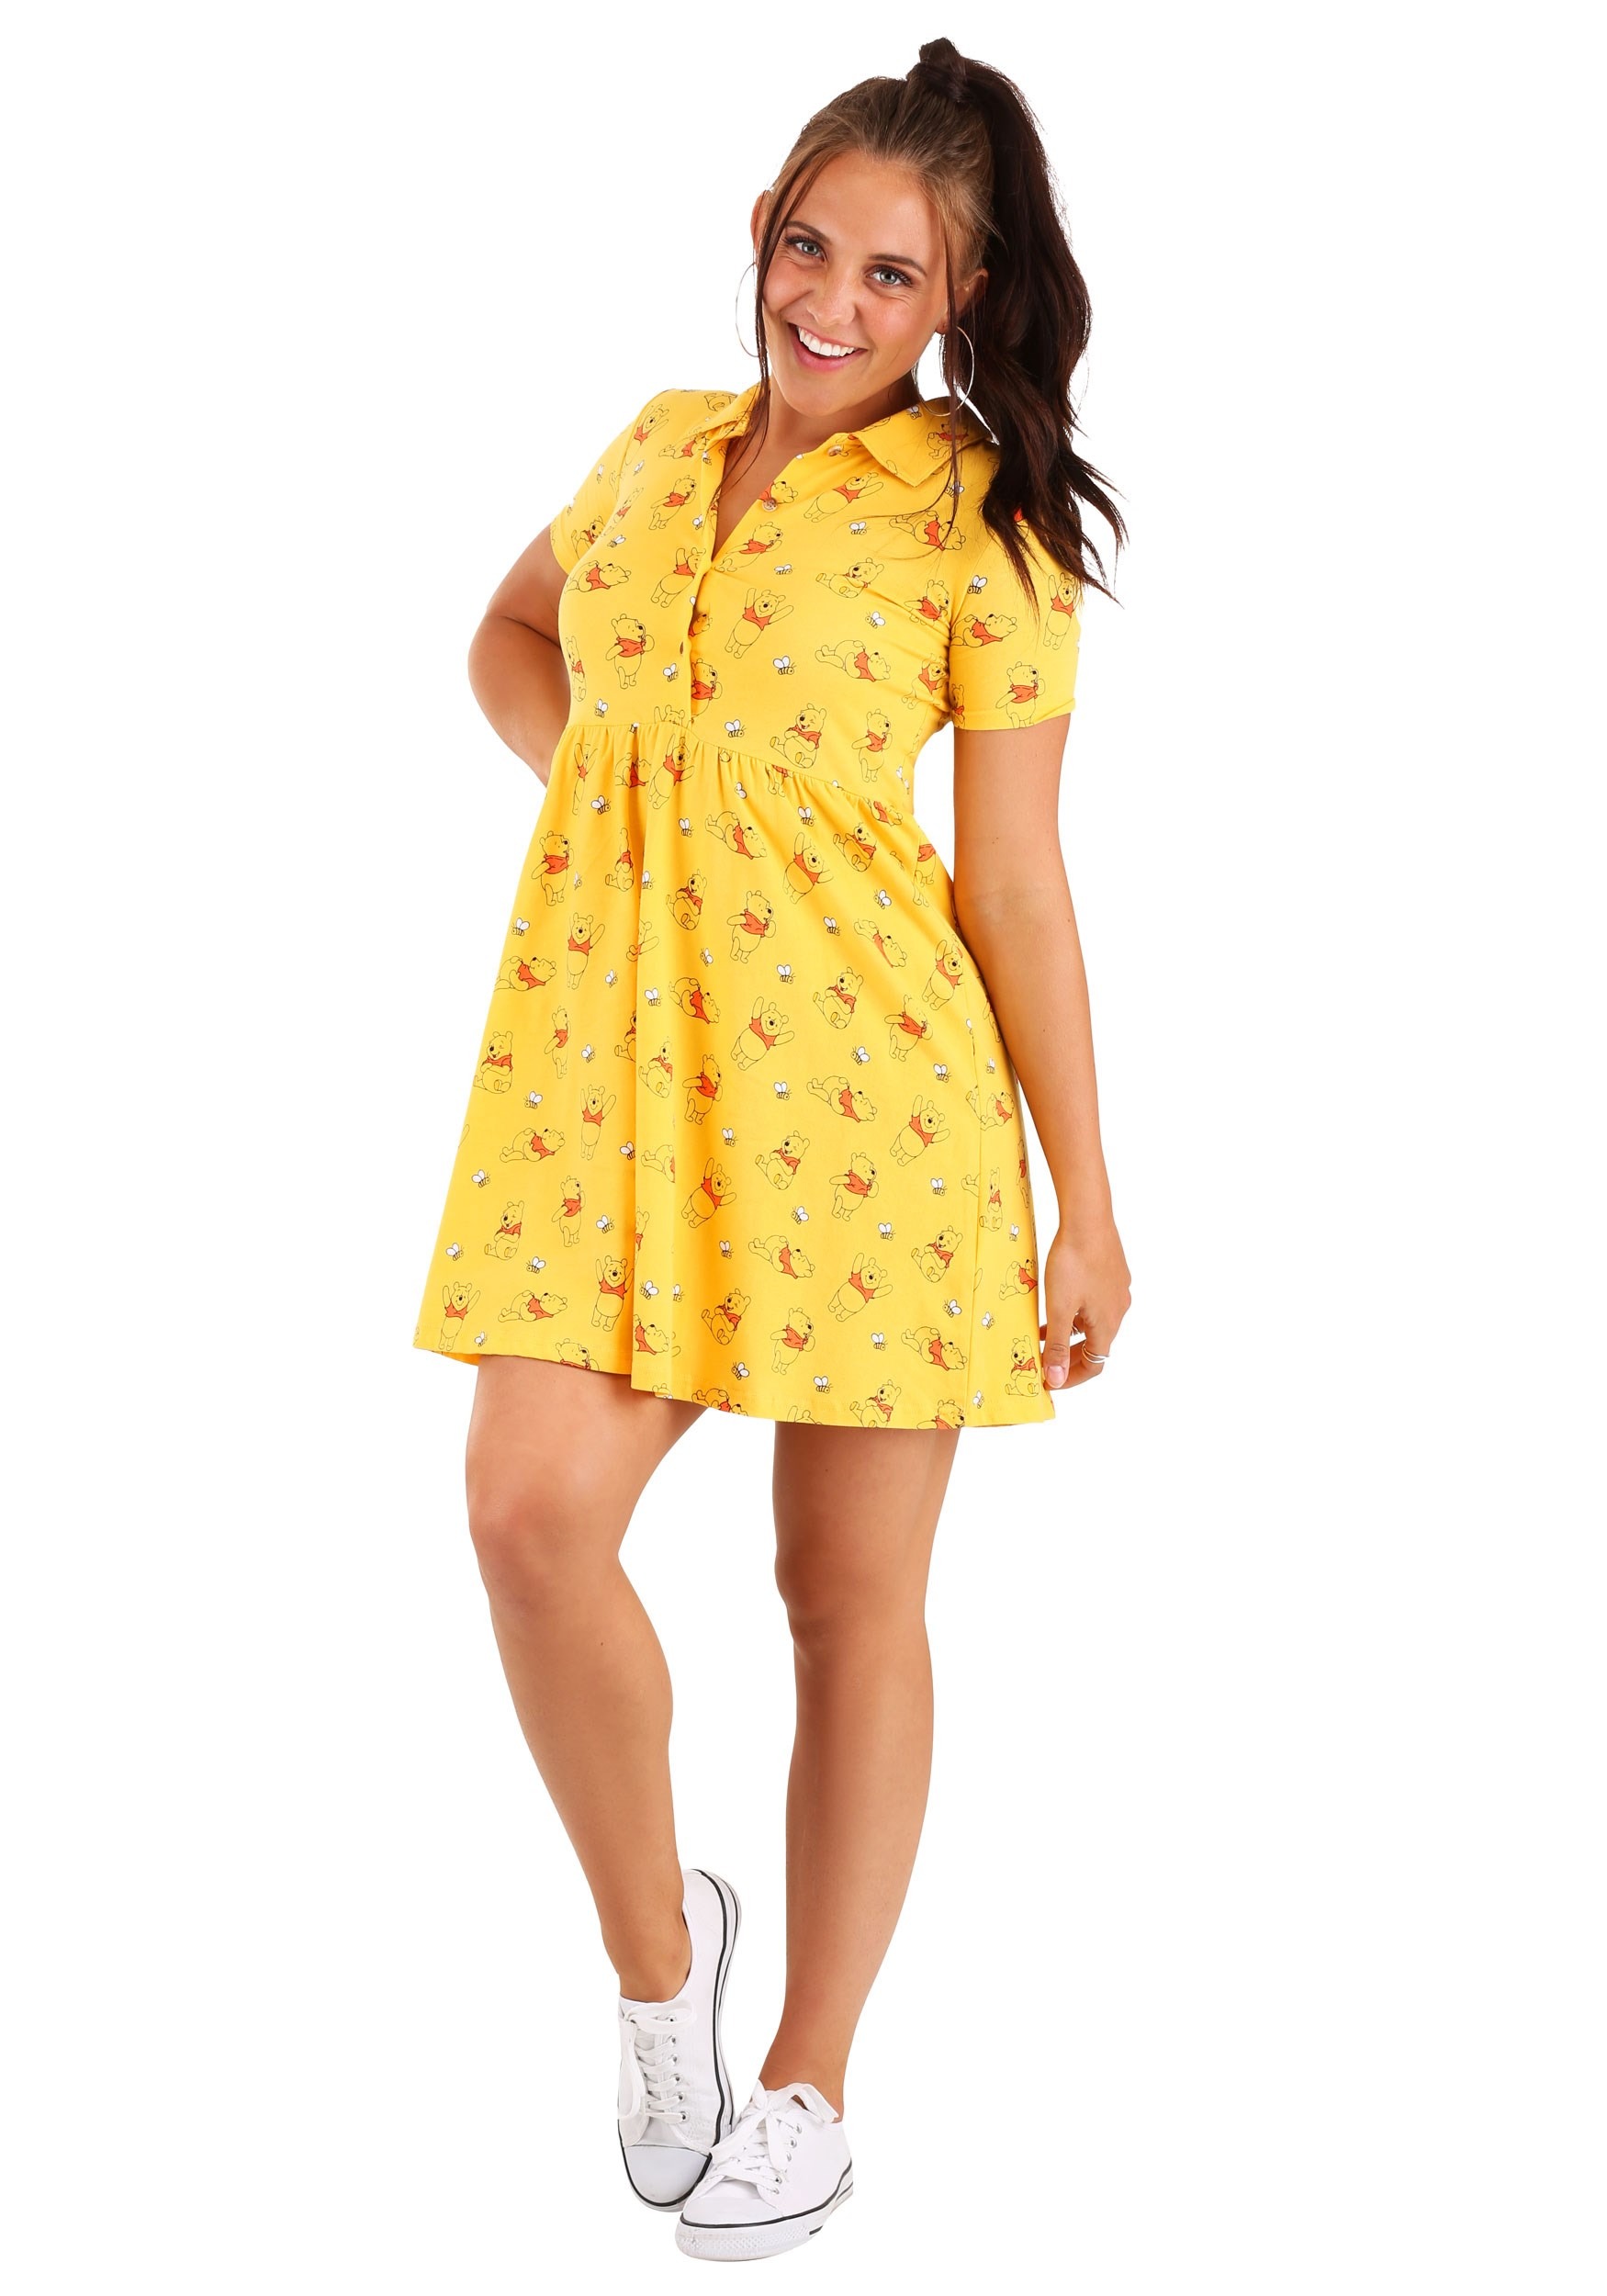 Winnie the Pooh Cakeworthy Dress